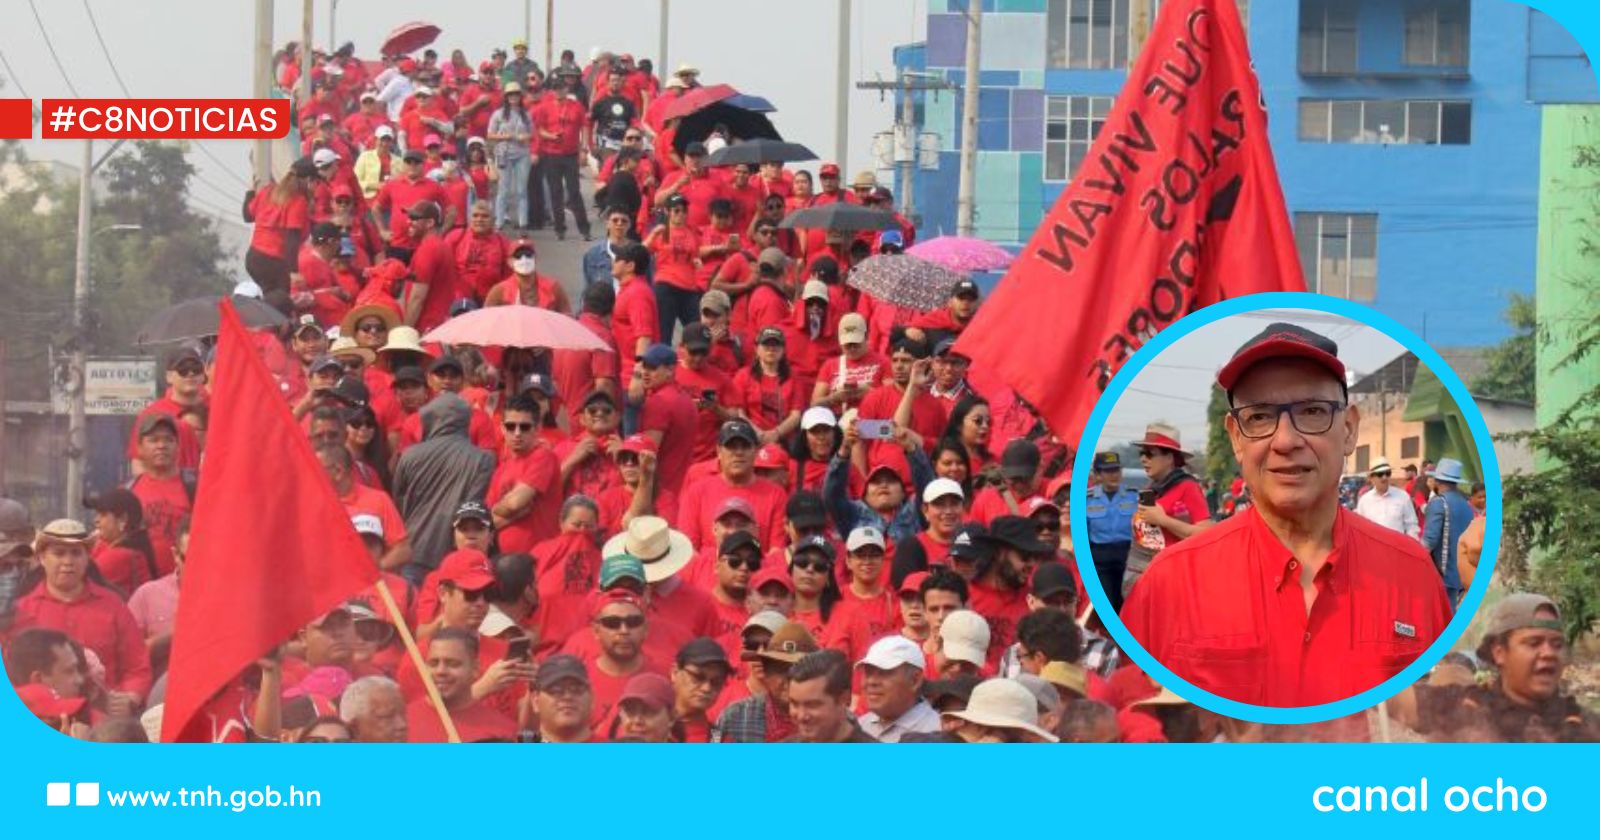 Ricardo Salgado: «La riqueza solo la generan los trabajadores transformando su realidad»